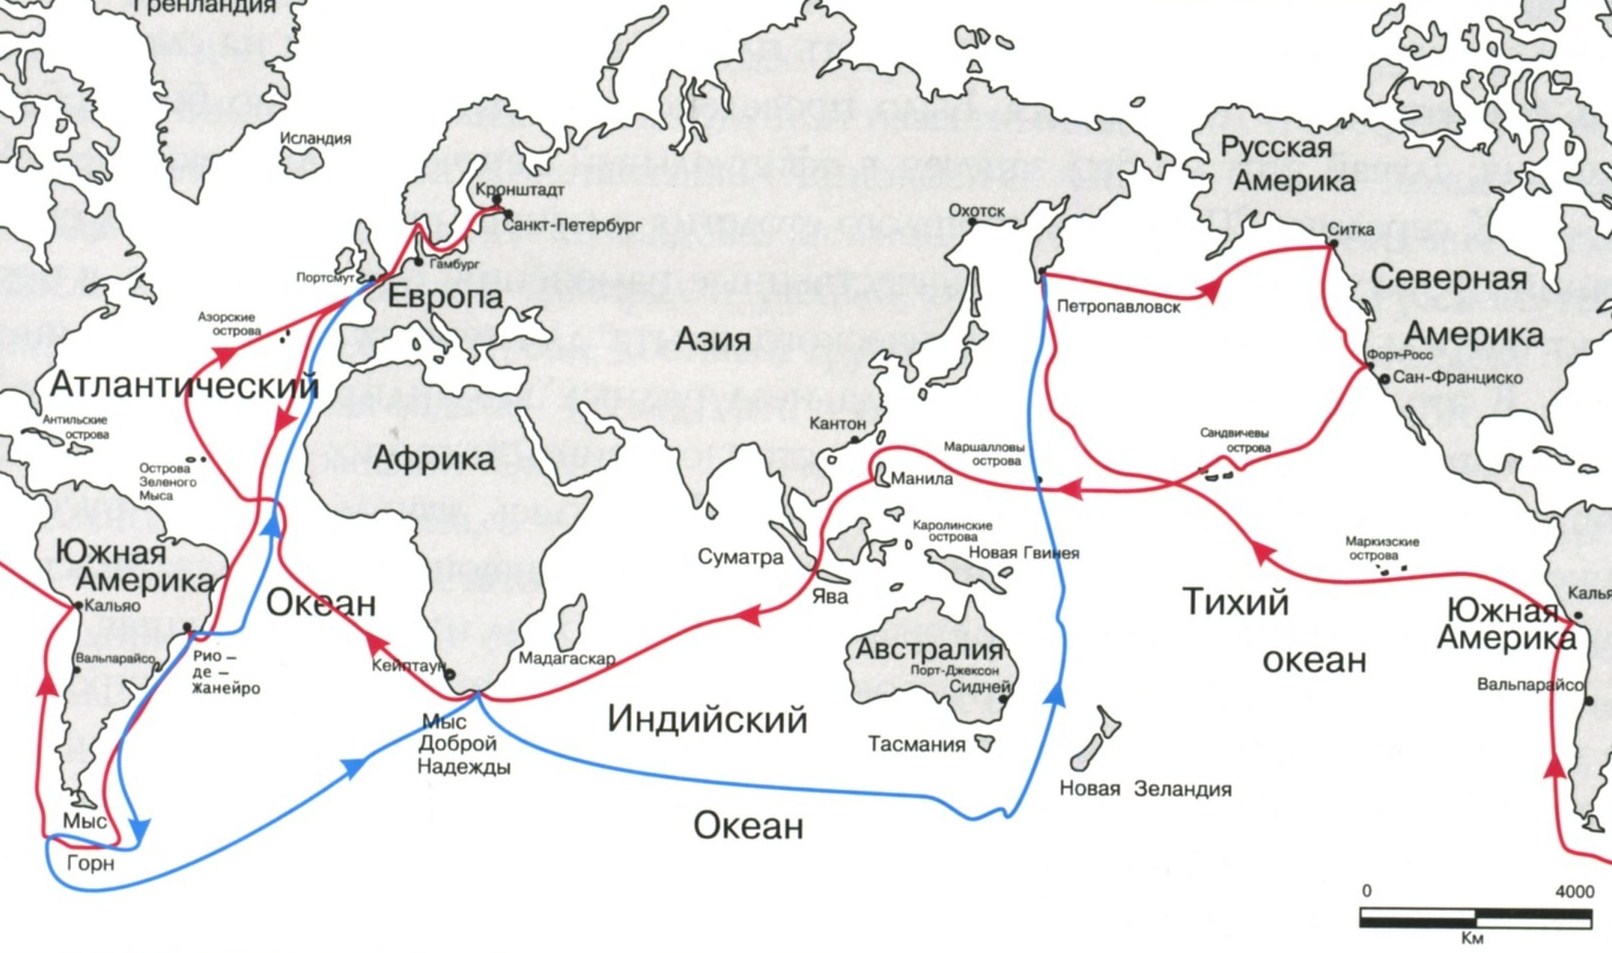 Карта двух плаваний Головнина на шлюпах «Диана» и «Камчатка» с указанием главных маршрутов и географических объектов